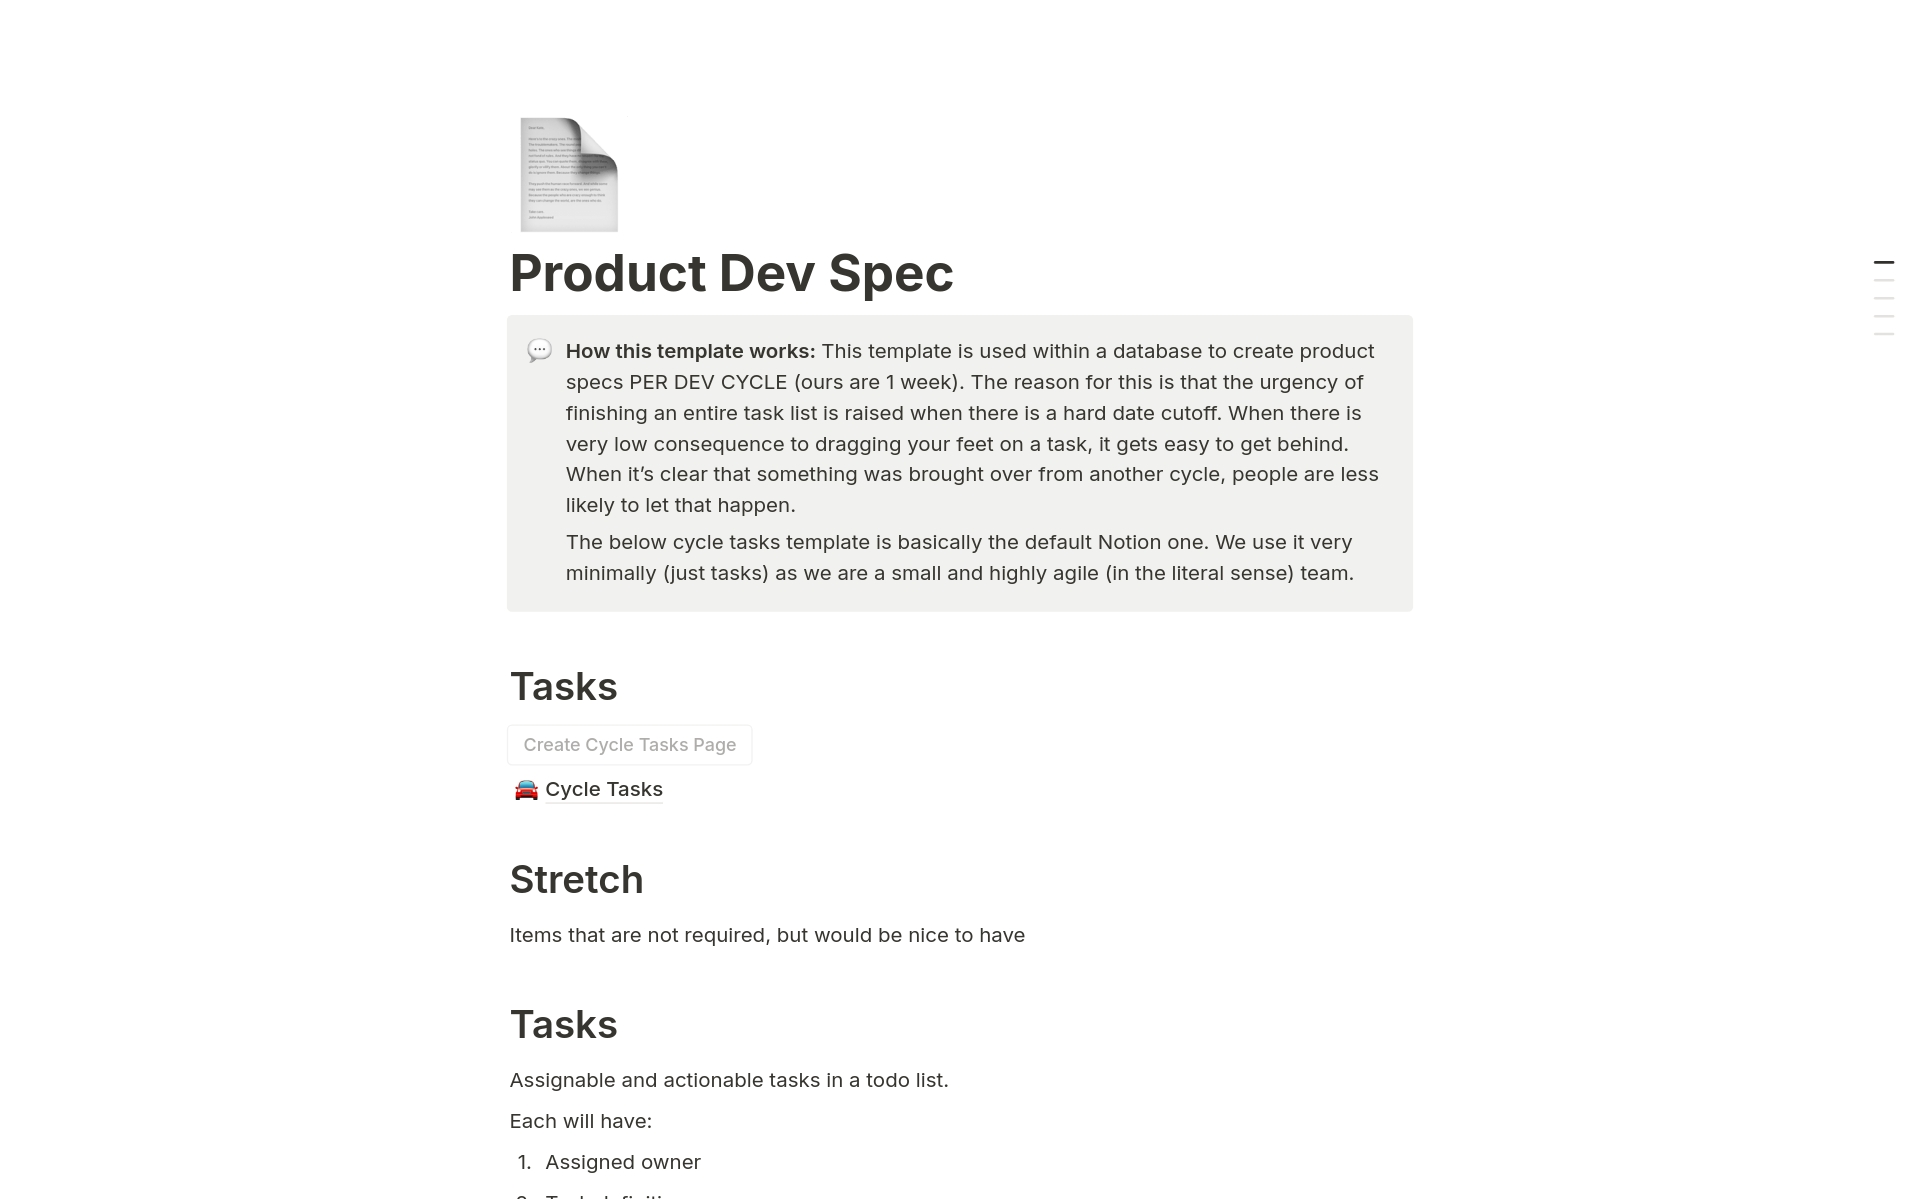 Vista previa de una plantilla para Tangia's Product Dev Spec